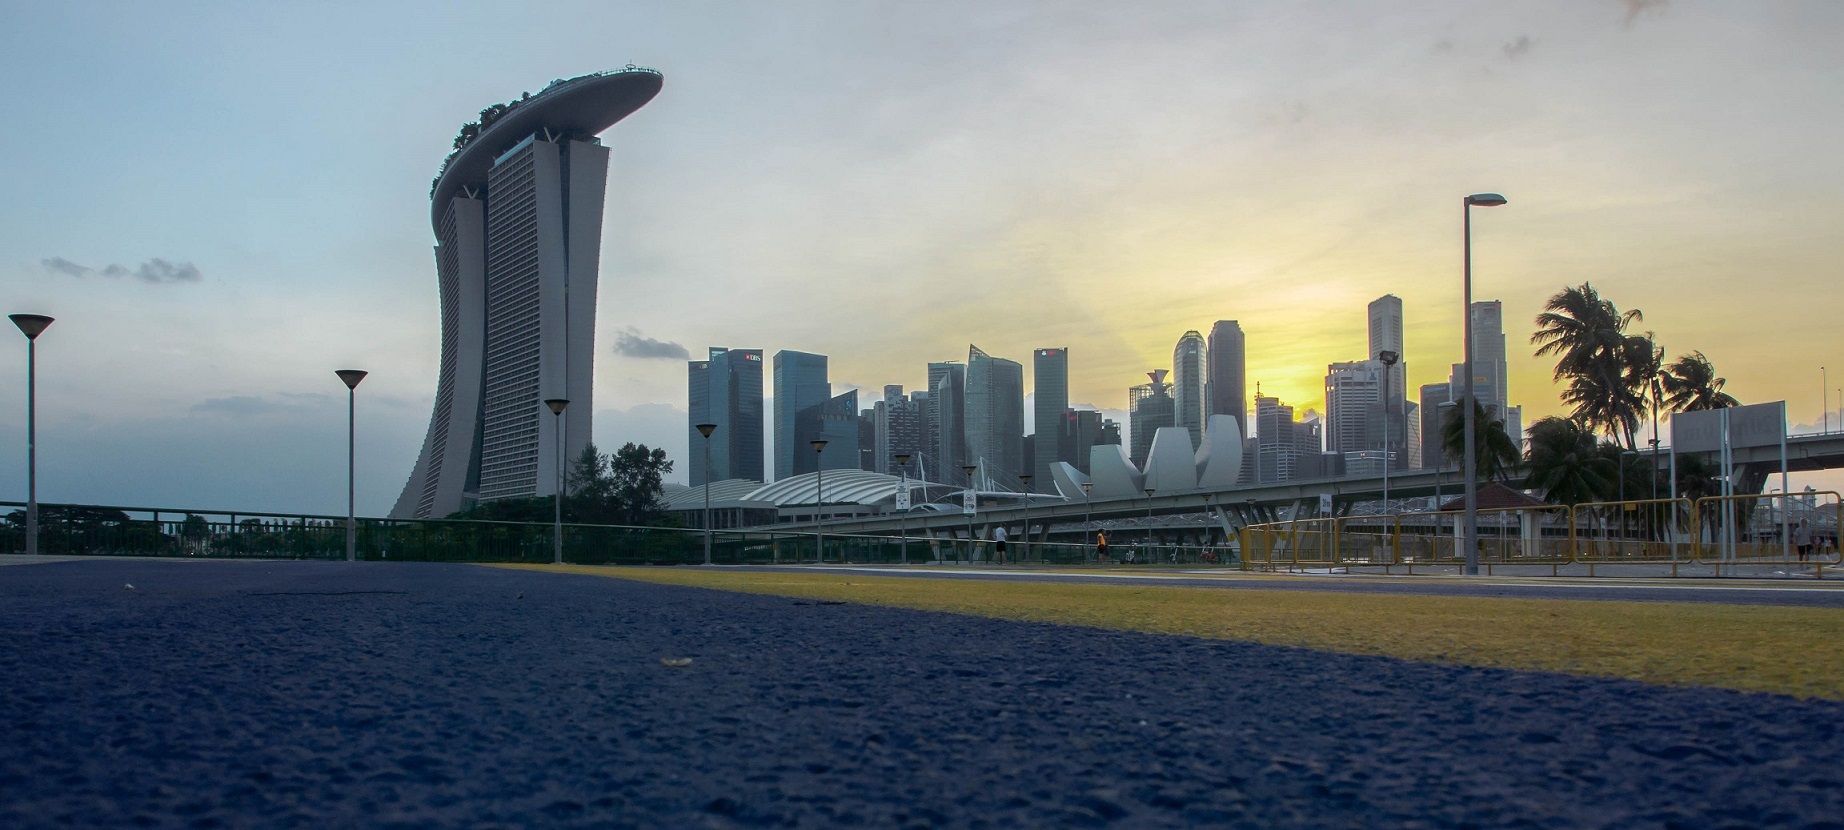 singapore skyline